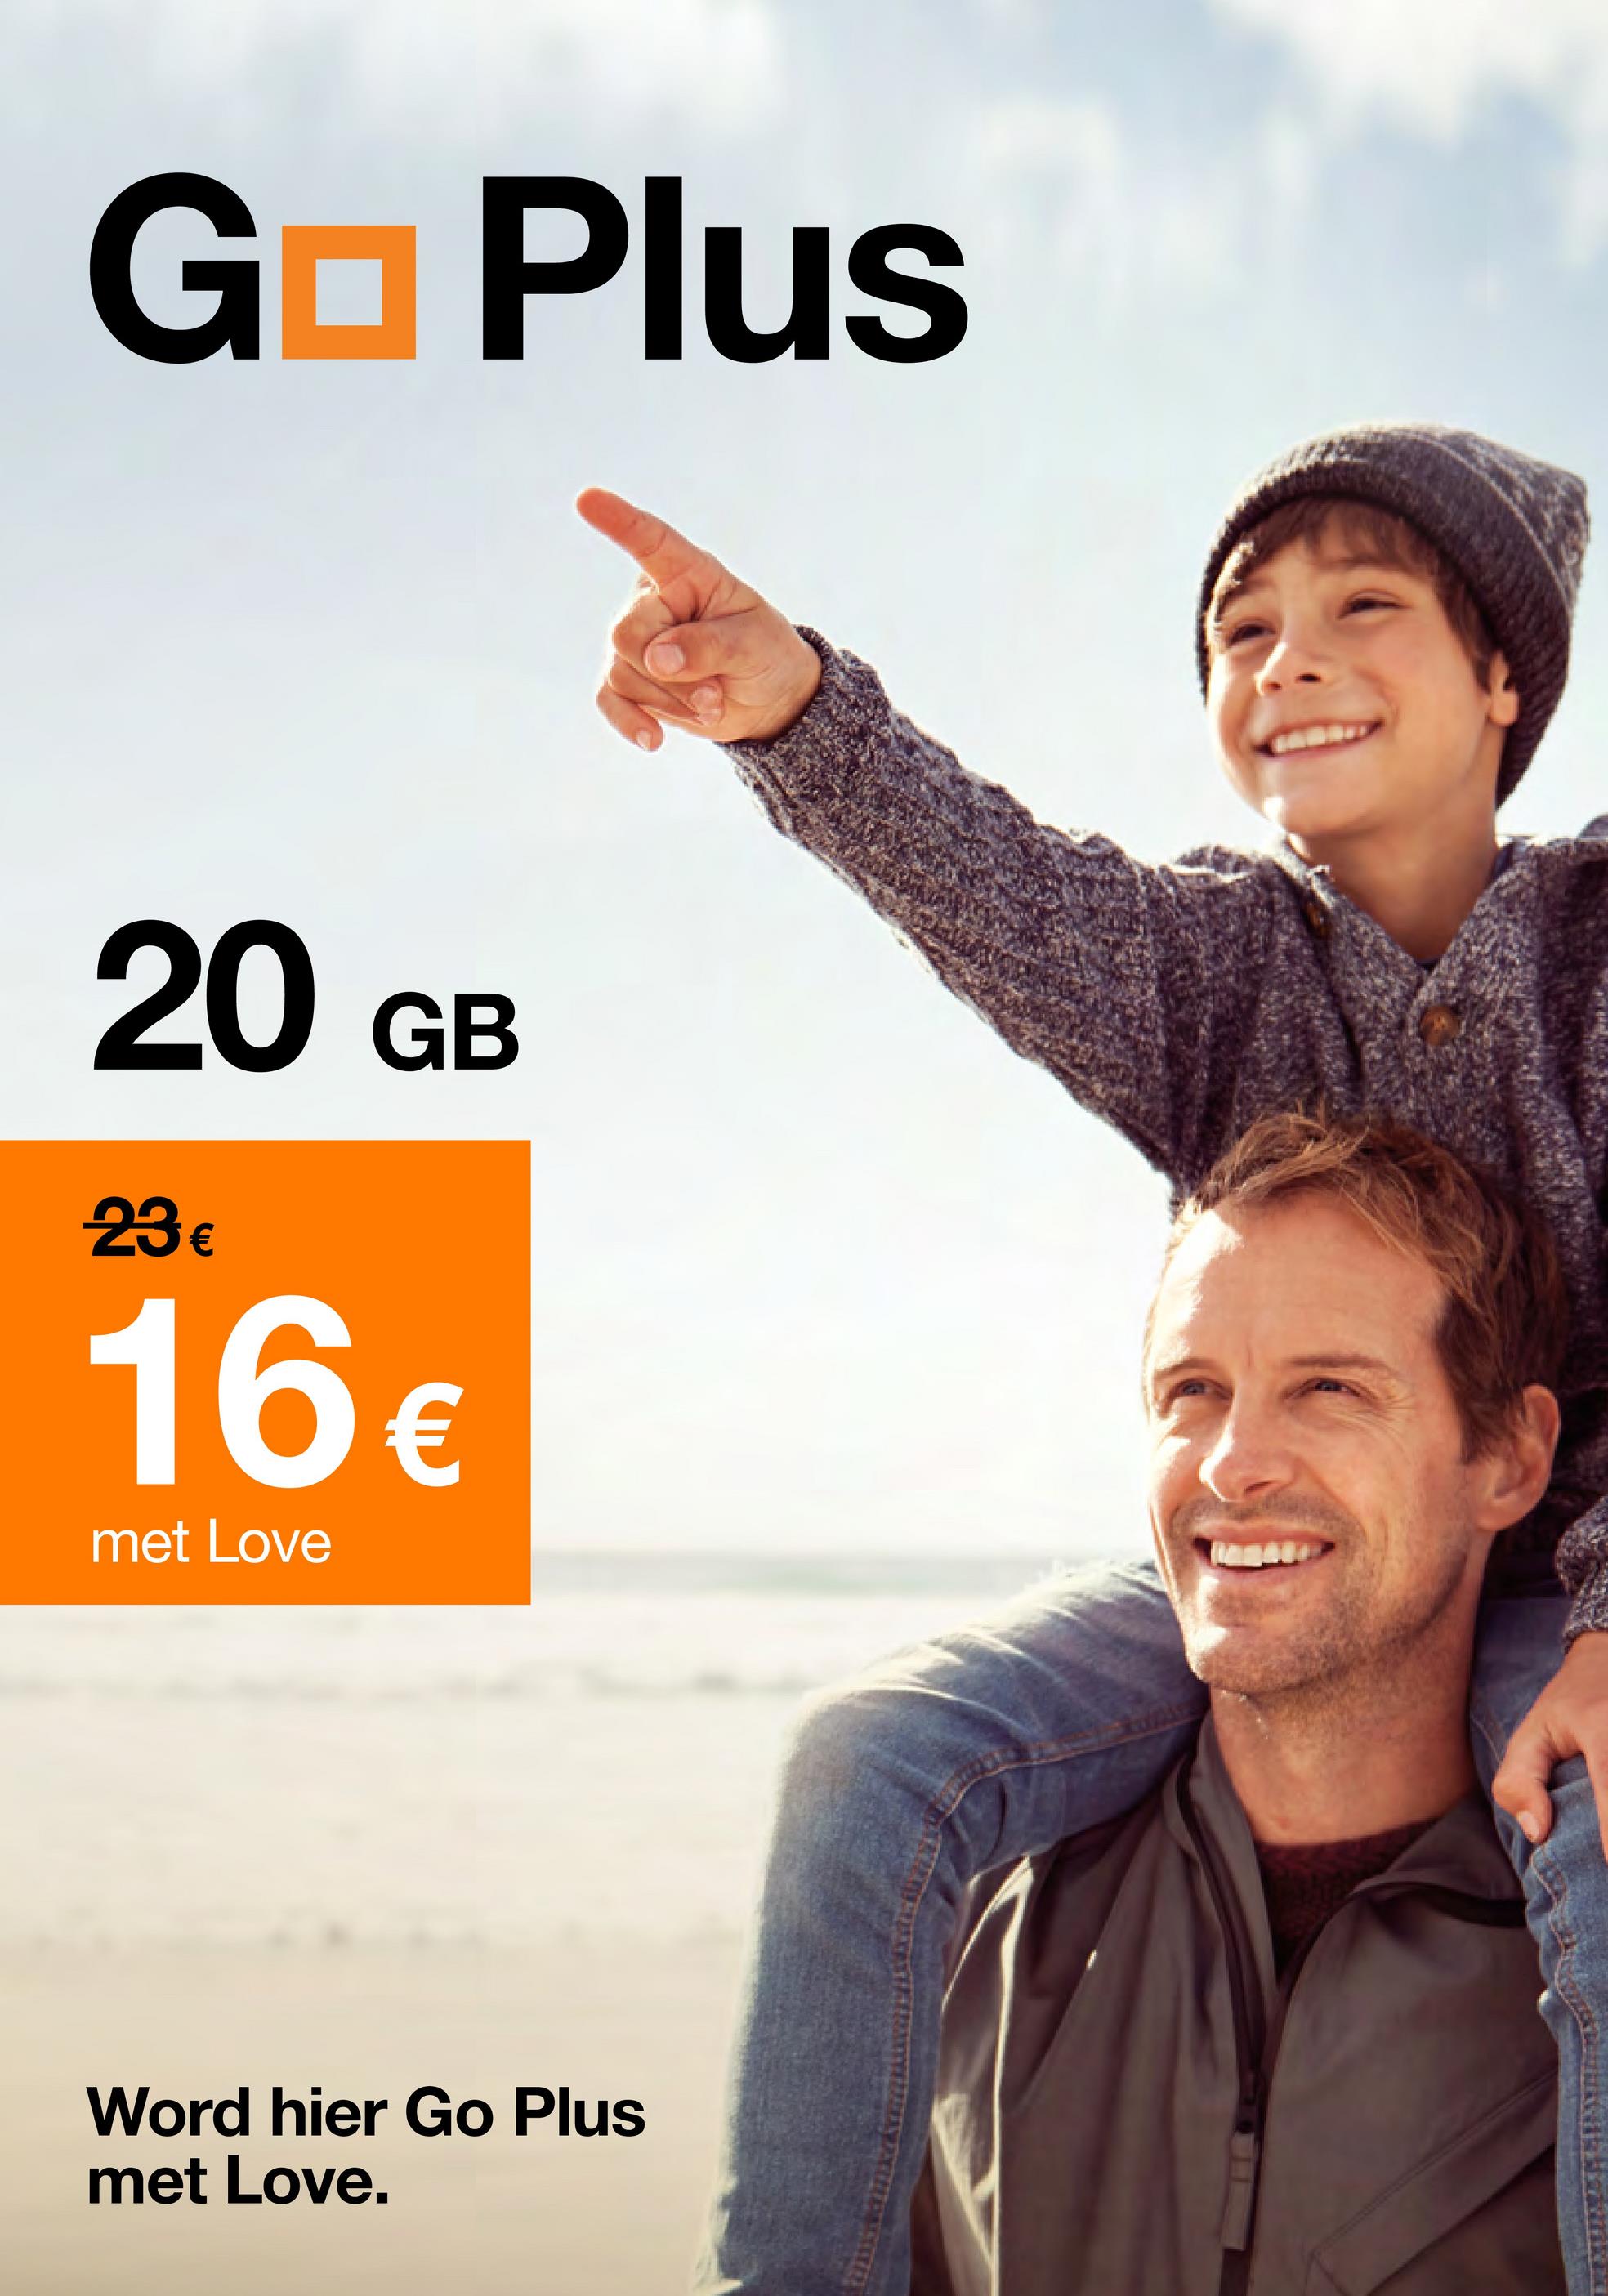 G Plus
■
20 GB
23€
16€
met Love
Word hier Go Plus
met Love.
WANG